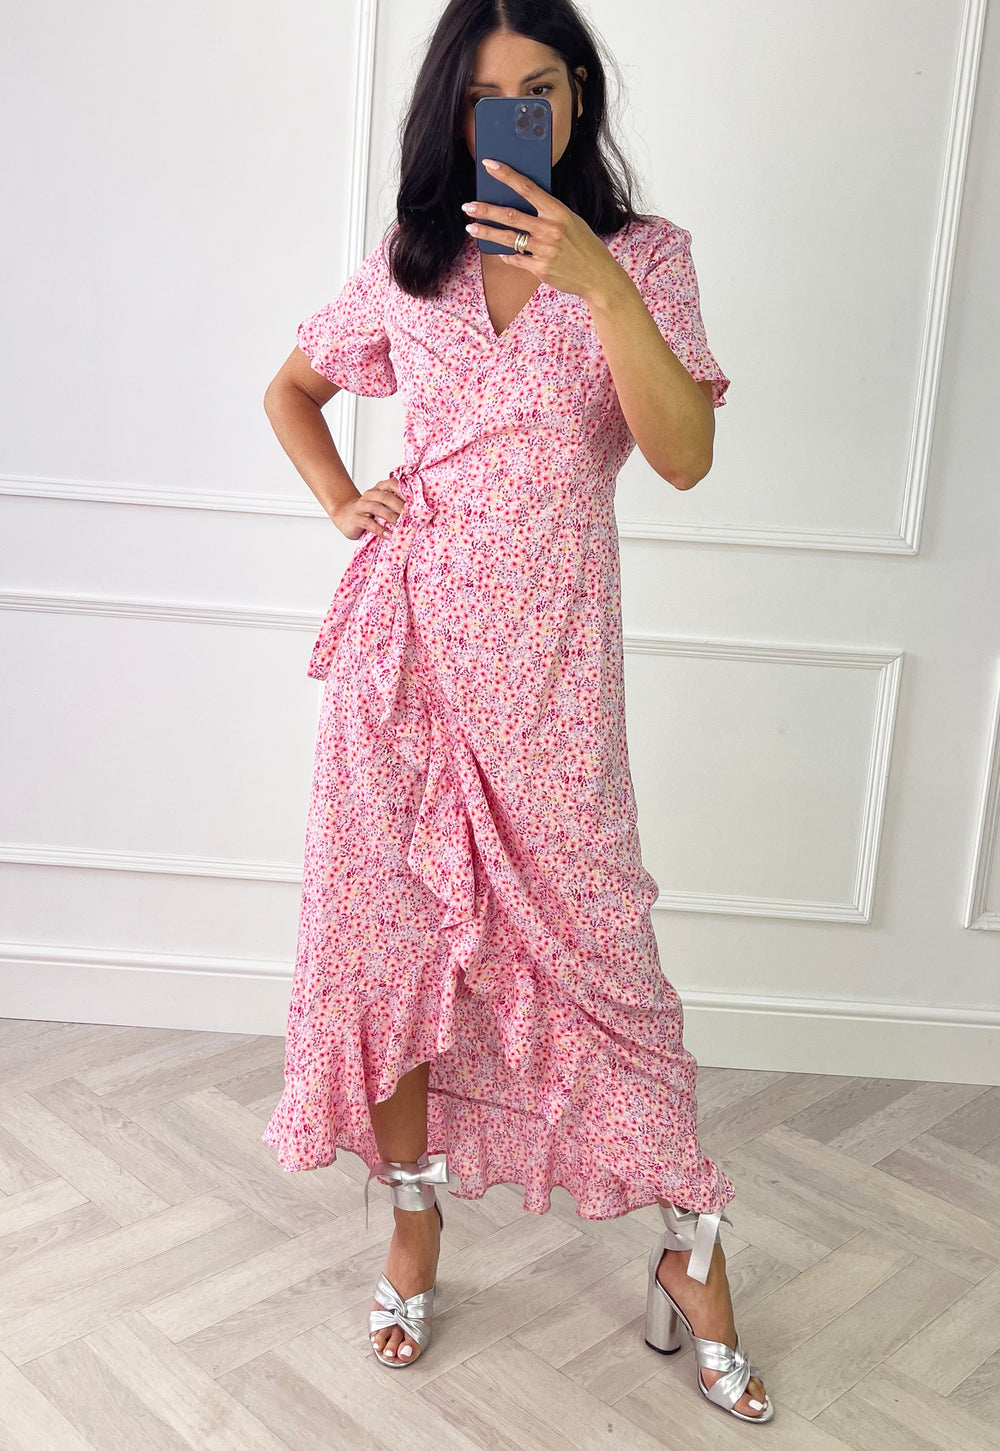 VERO MODA Henna Floral Print Maxi Frill Wrap in Pink | One Nation Clothing VERO MODA Henna Floral Print Maxi Frill Wrap Dress in